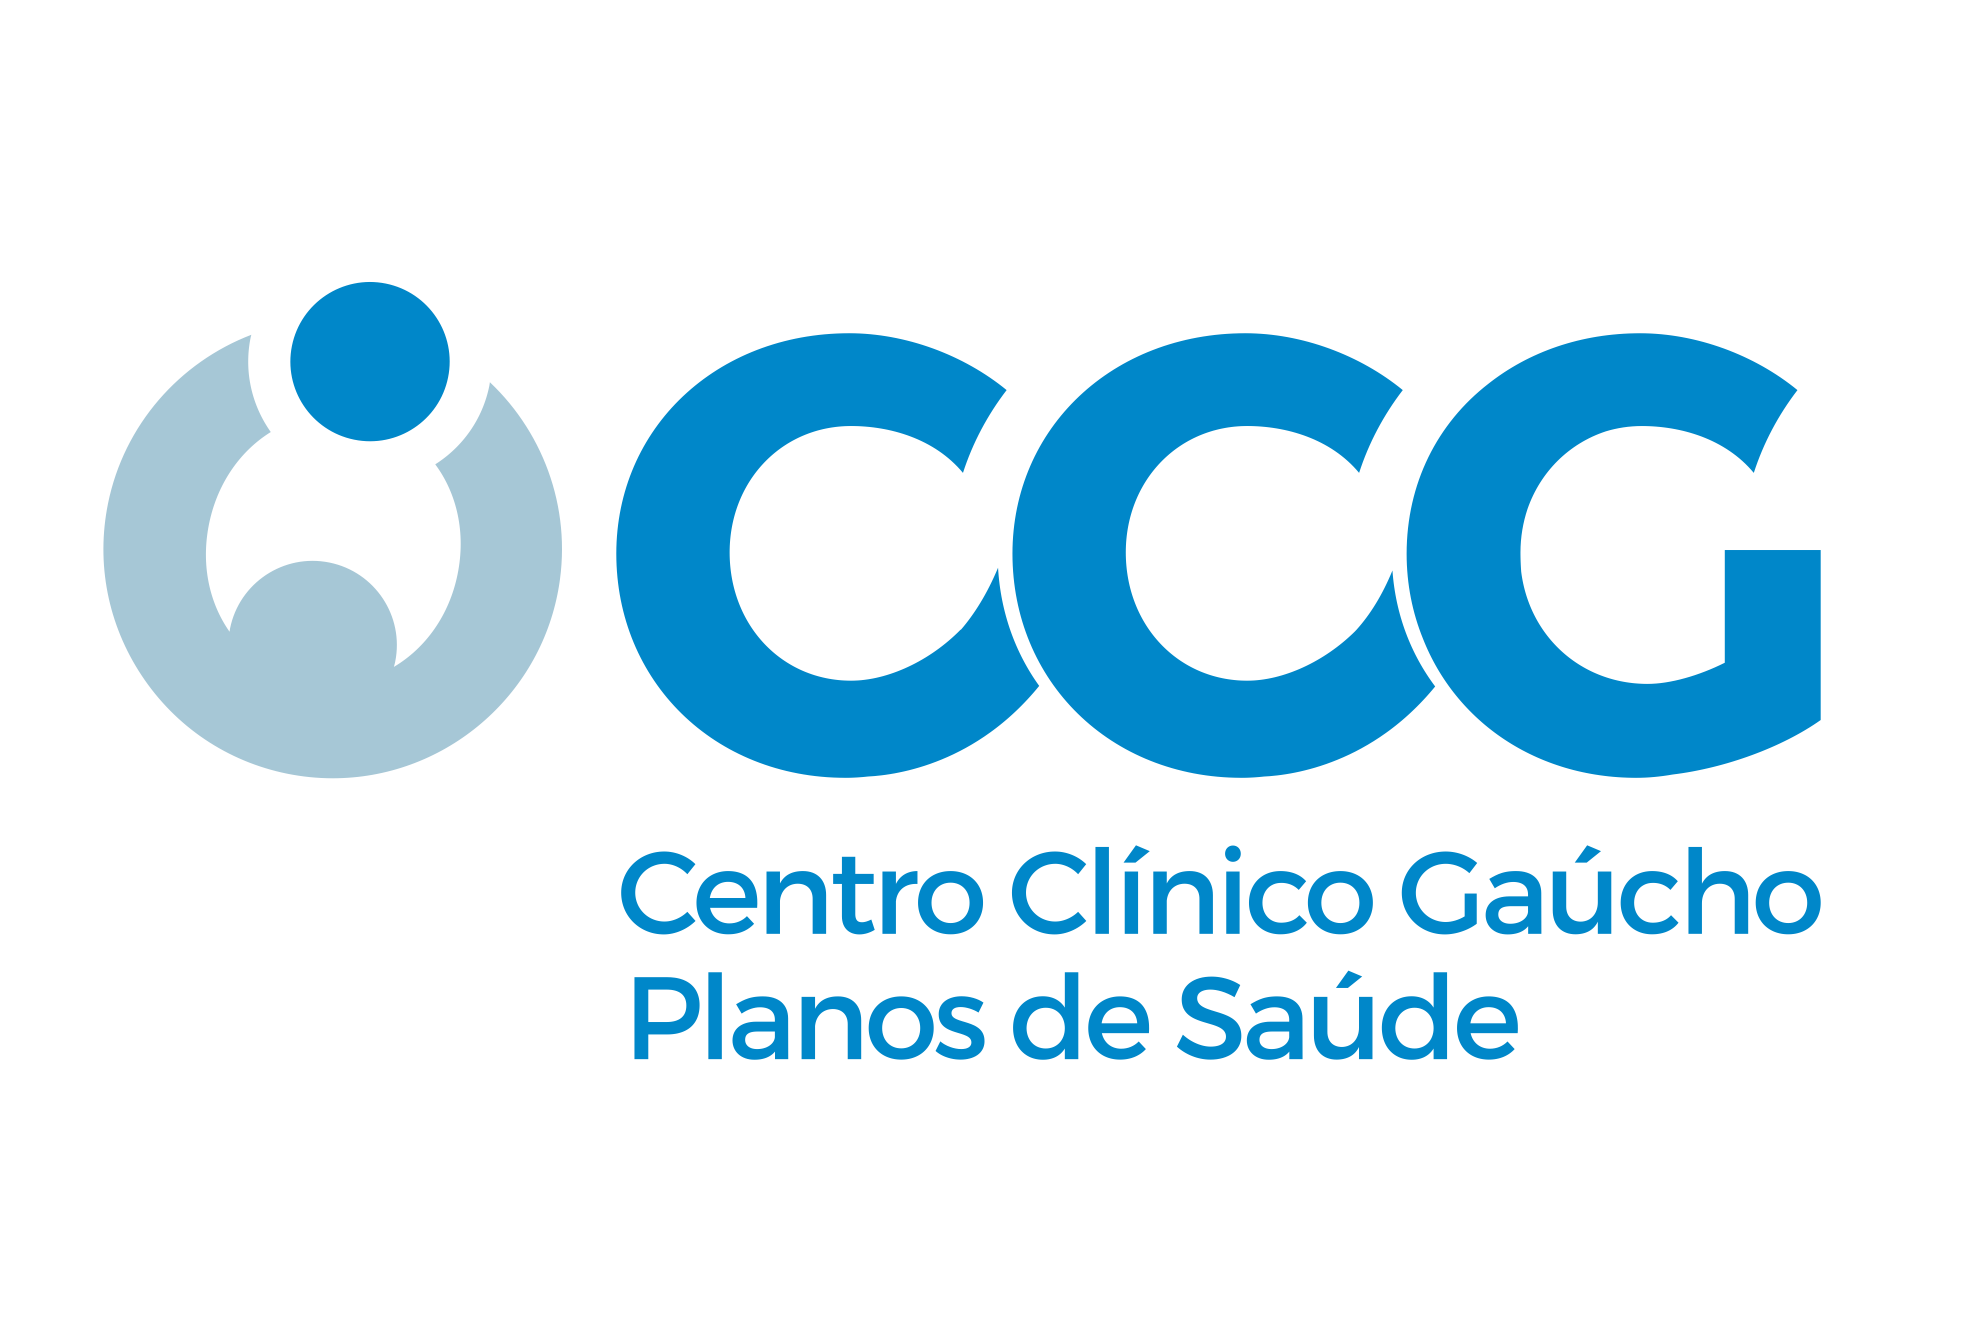 CENTRO CLINICO GAUCHO - Alvorada, RS